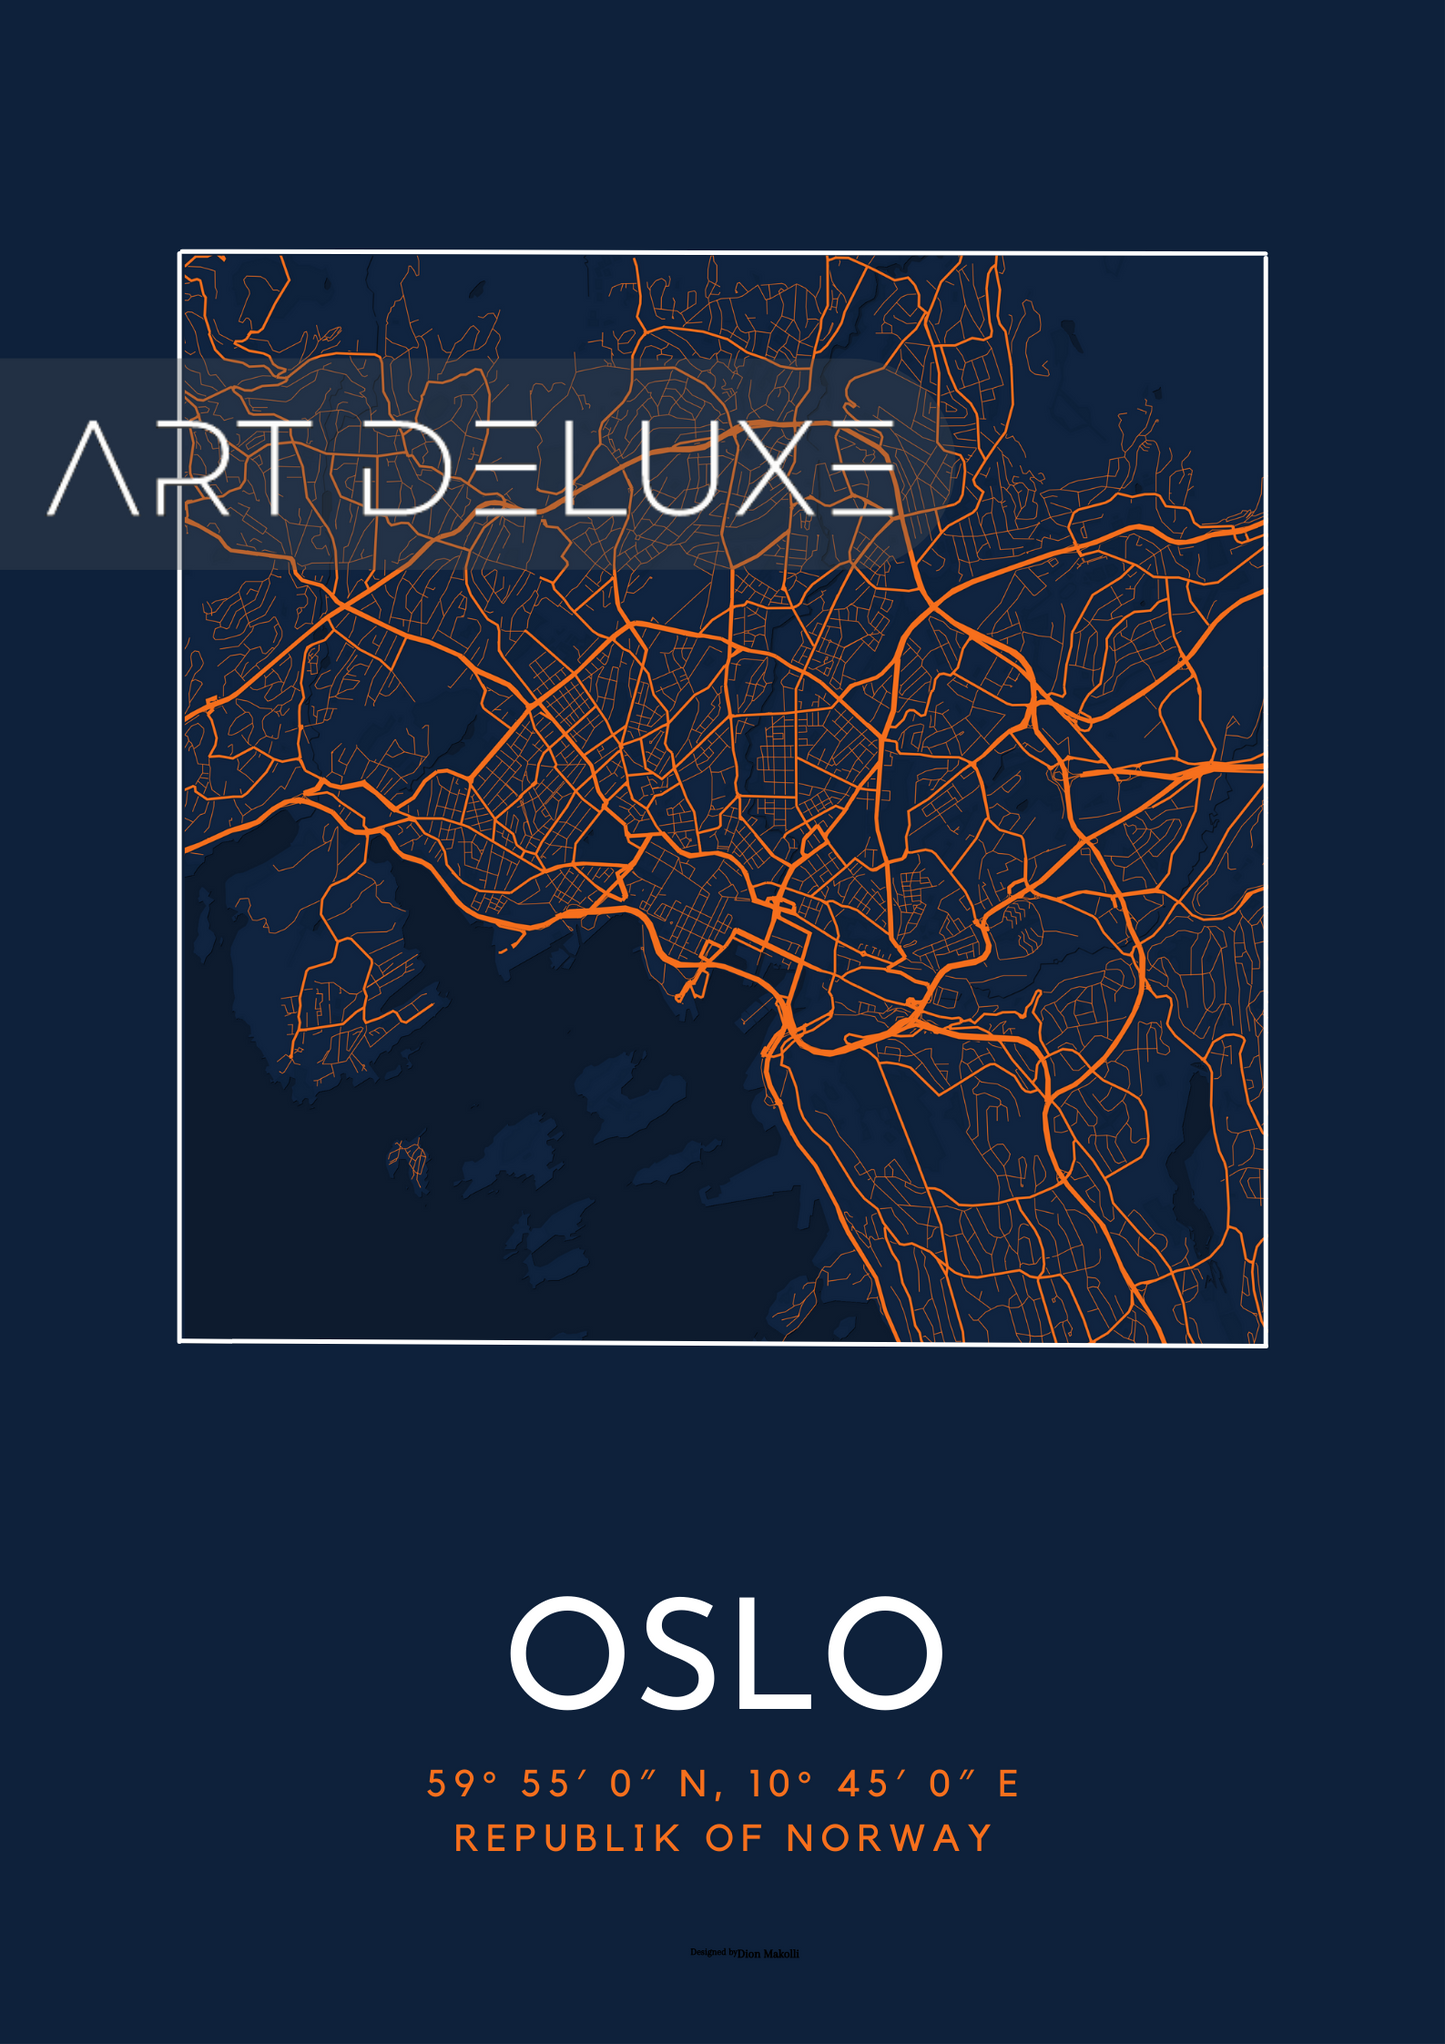 Oslo - Deluxe